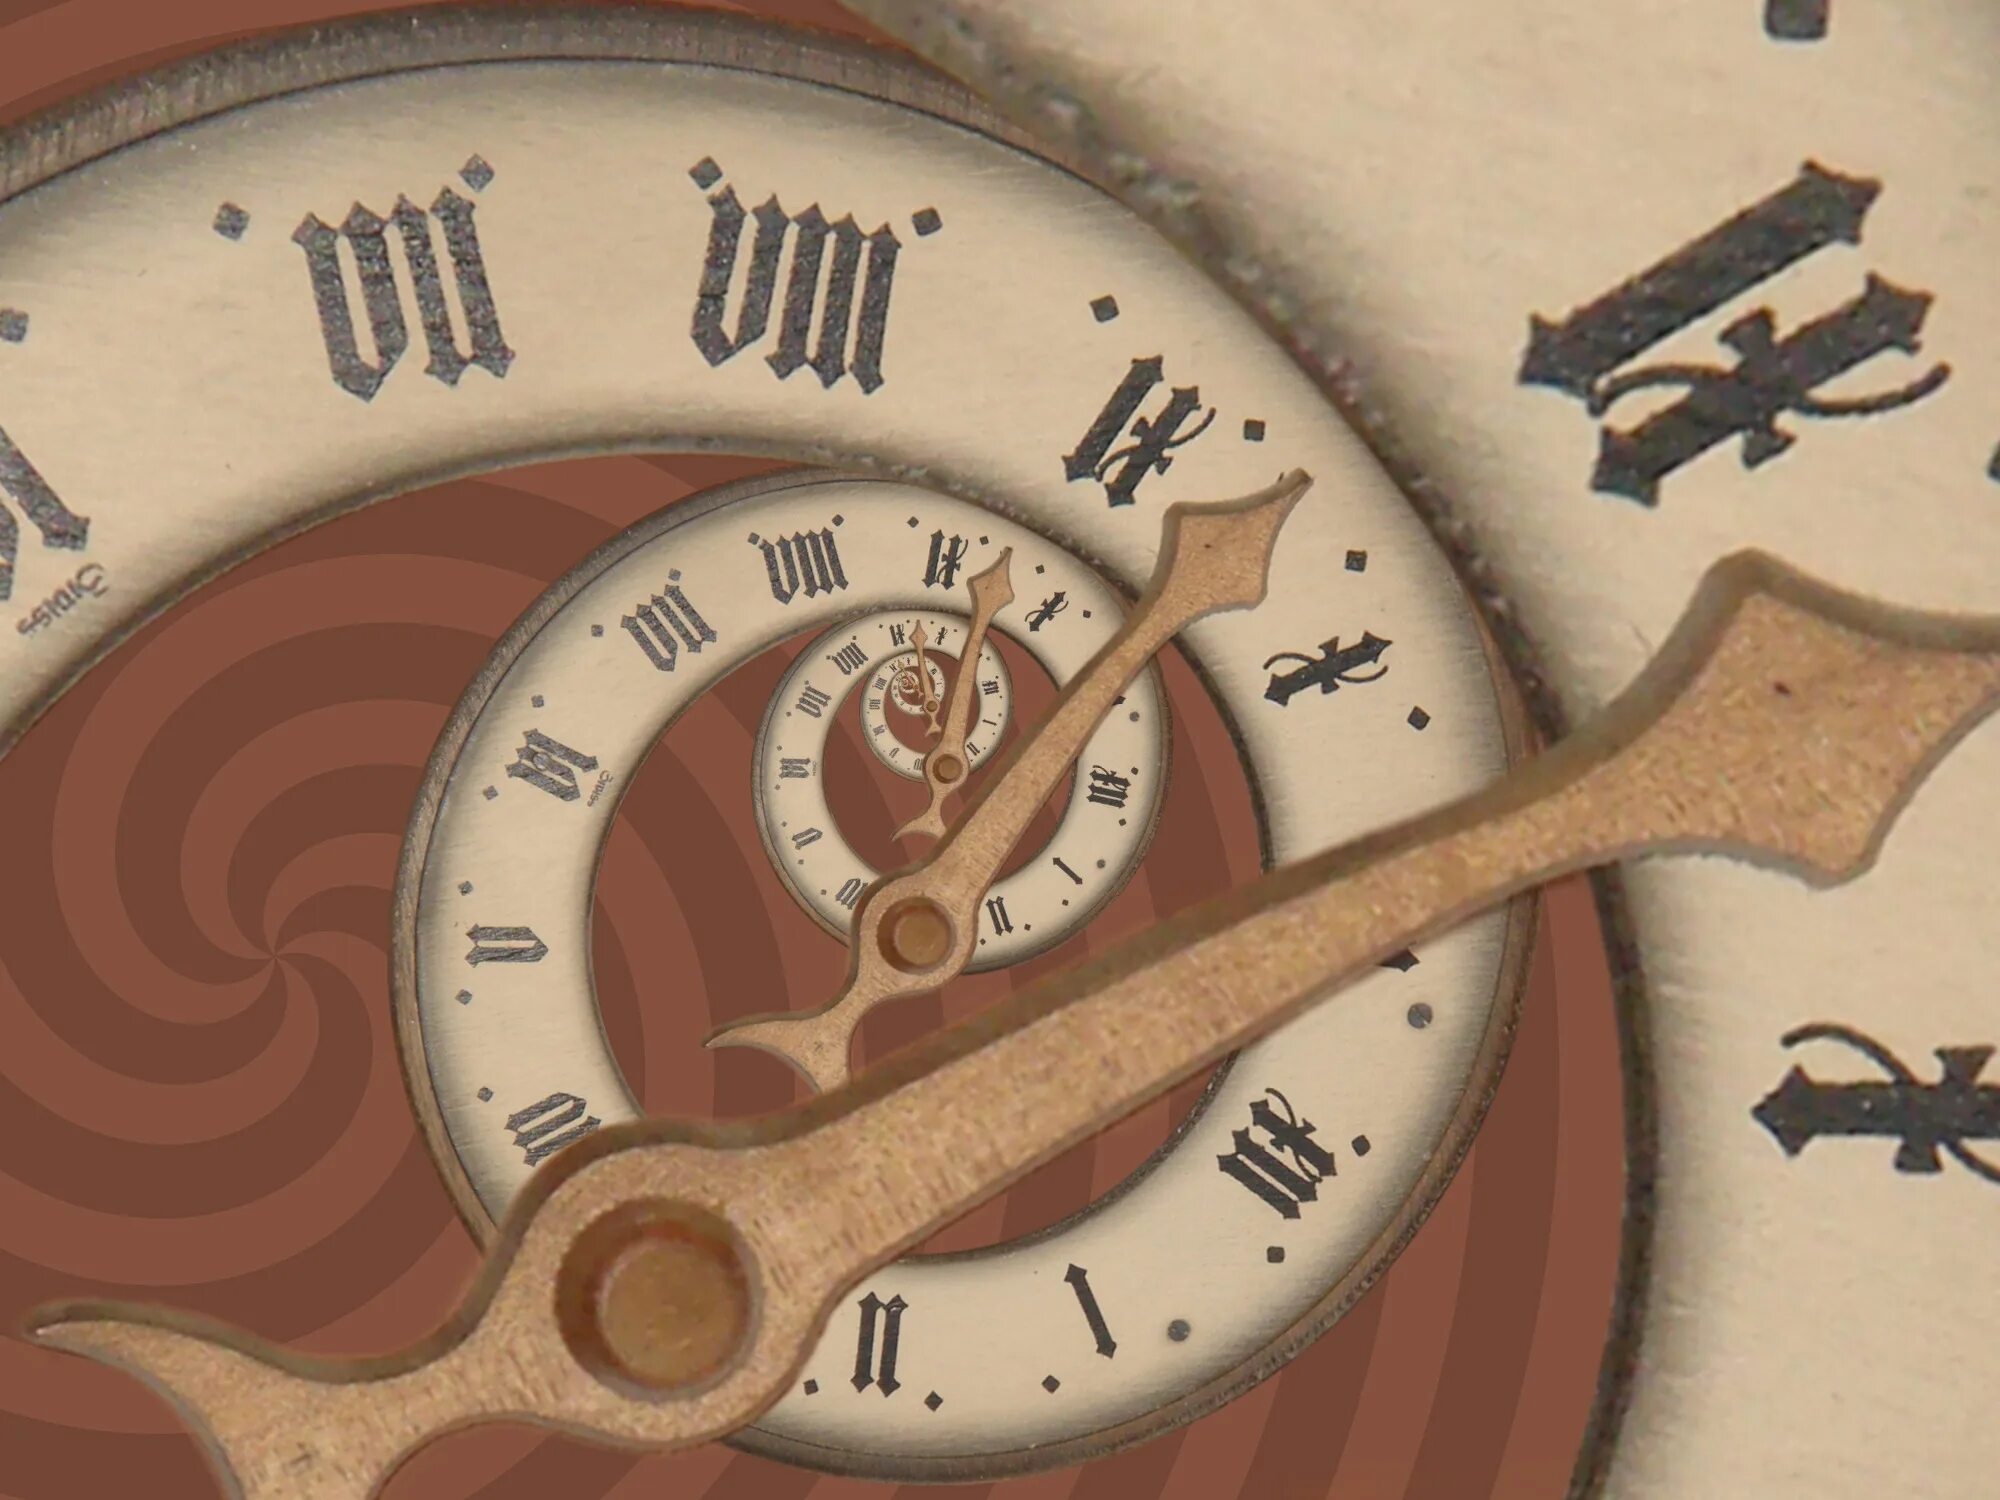 Метра времени. Изображение времени. Сказочные часы. Спираль времени. Картинки с изображением времени.